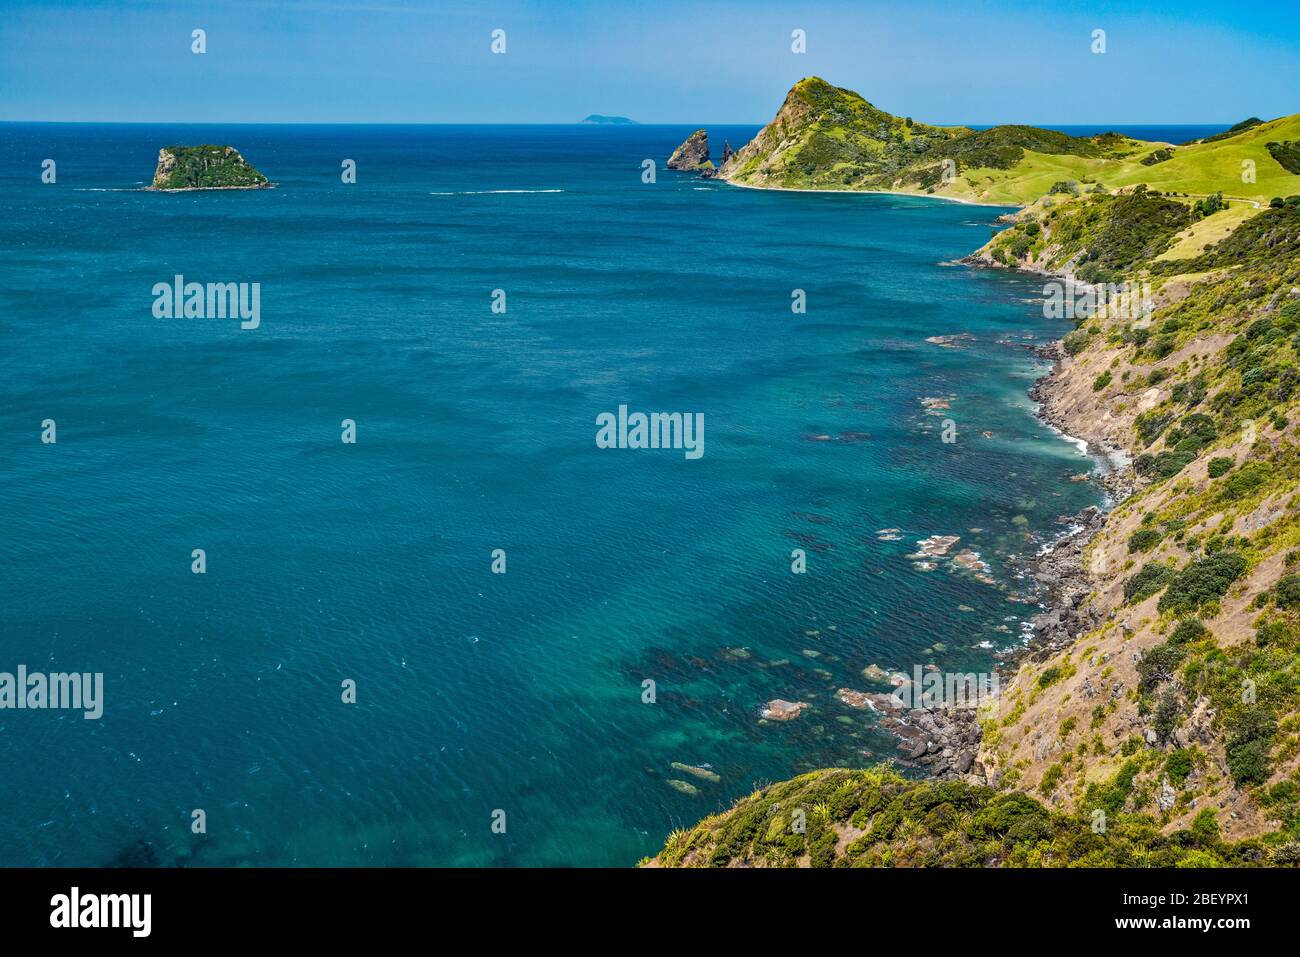 Fletcher Bay, Pan di zucchero e i pinnacoli, Square Top Island sulla sinistra, Coromandel Peninsula, Waikato Regione, North Island, Nuova Zelanda Foto Stock